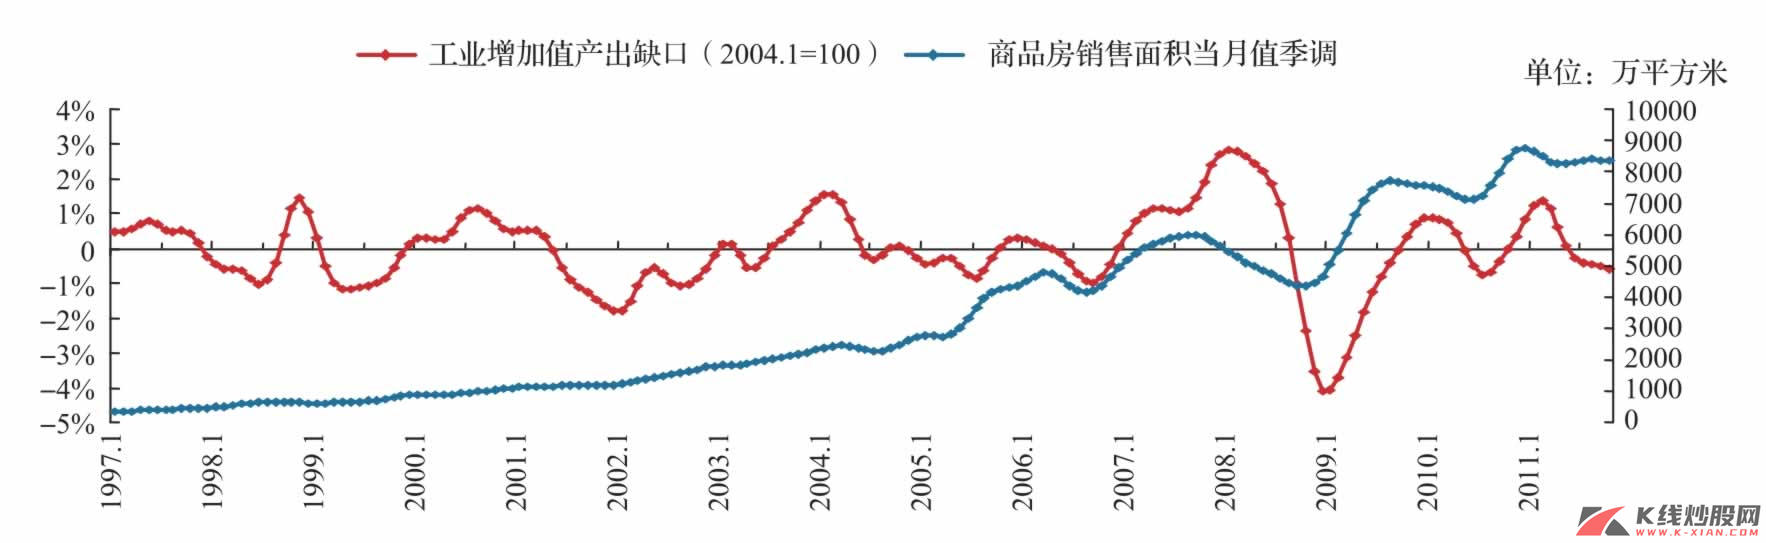 中国经济周期与房地产周期